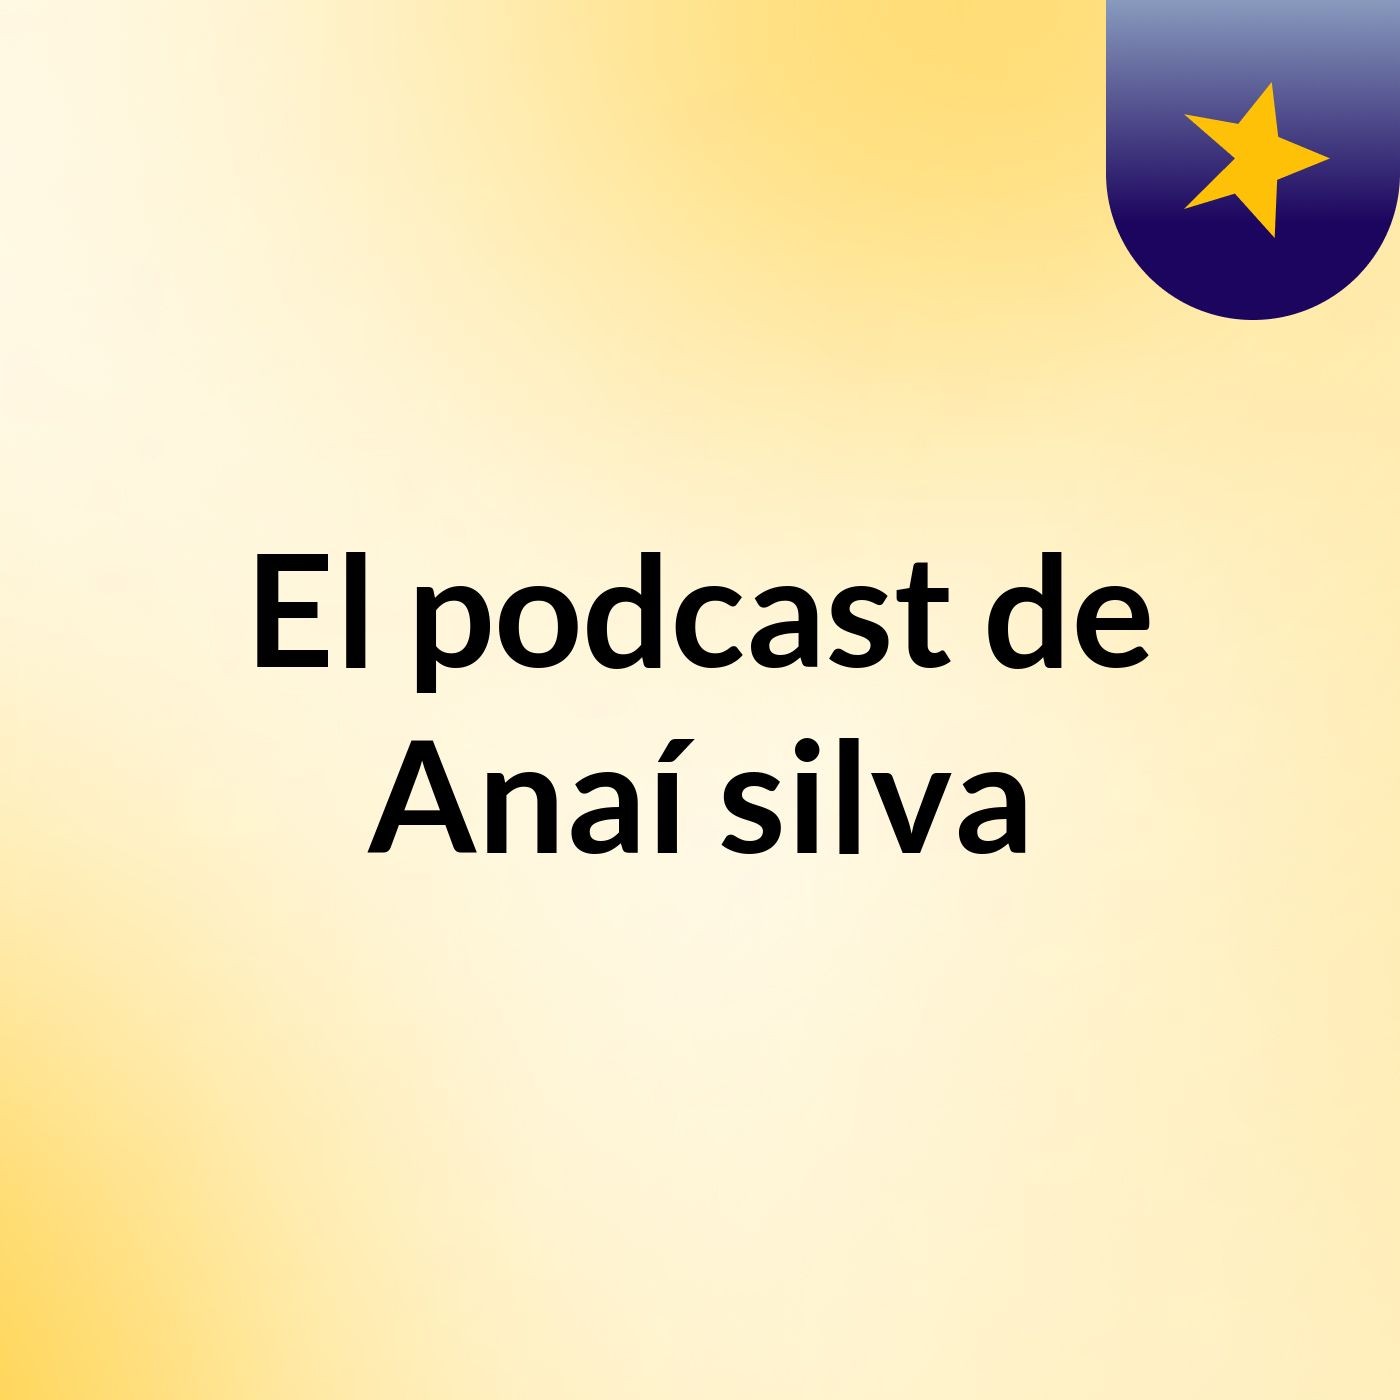 El podcast de Anaí silva